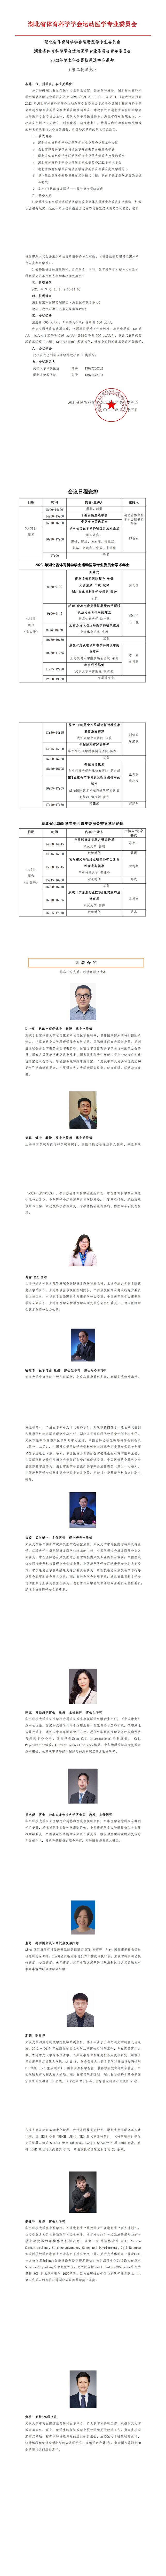 2023年湖北省运动医学专业委员会年会第二轮通知.jpg